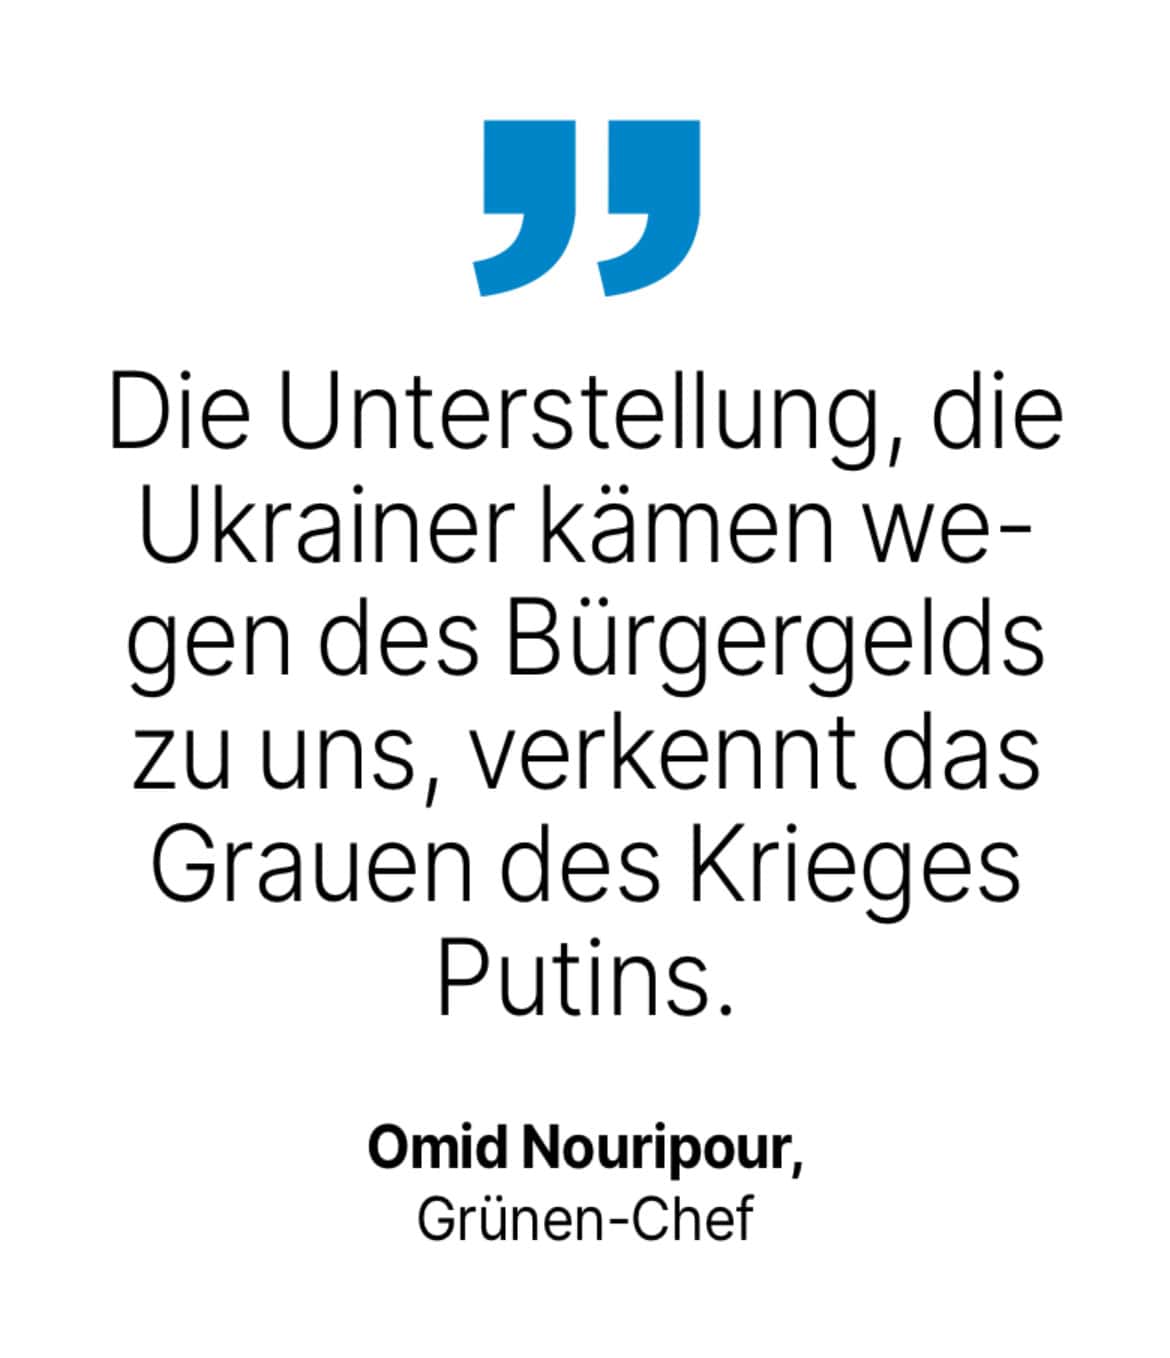 Omid Nouripour, Grünen-Chef: Die Unterstellung, die Ukrainer kämen wegen des Bürgergelds zu uns, verkennt das Grauen des Krieges Putins.